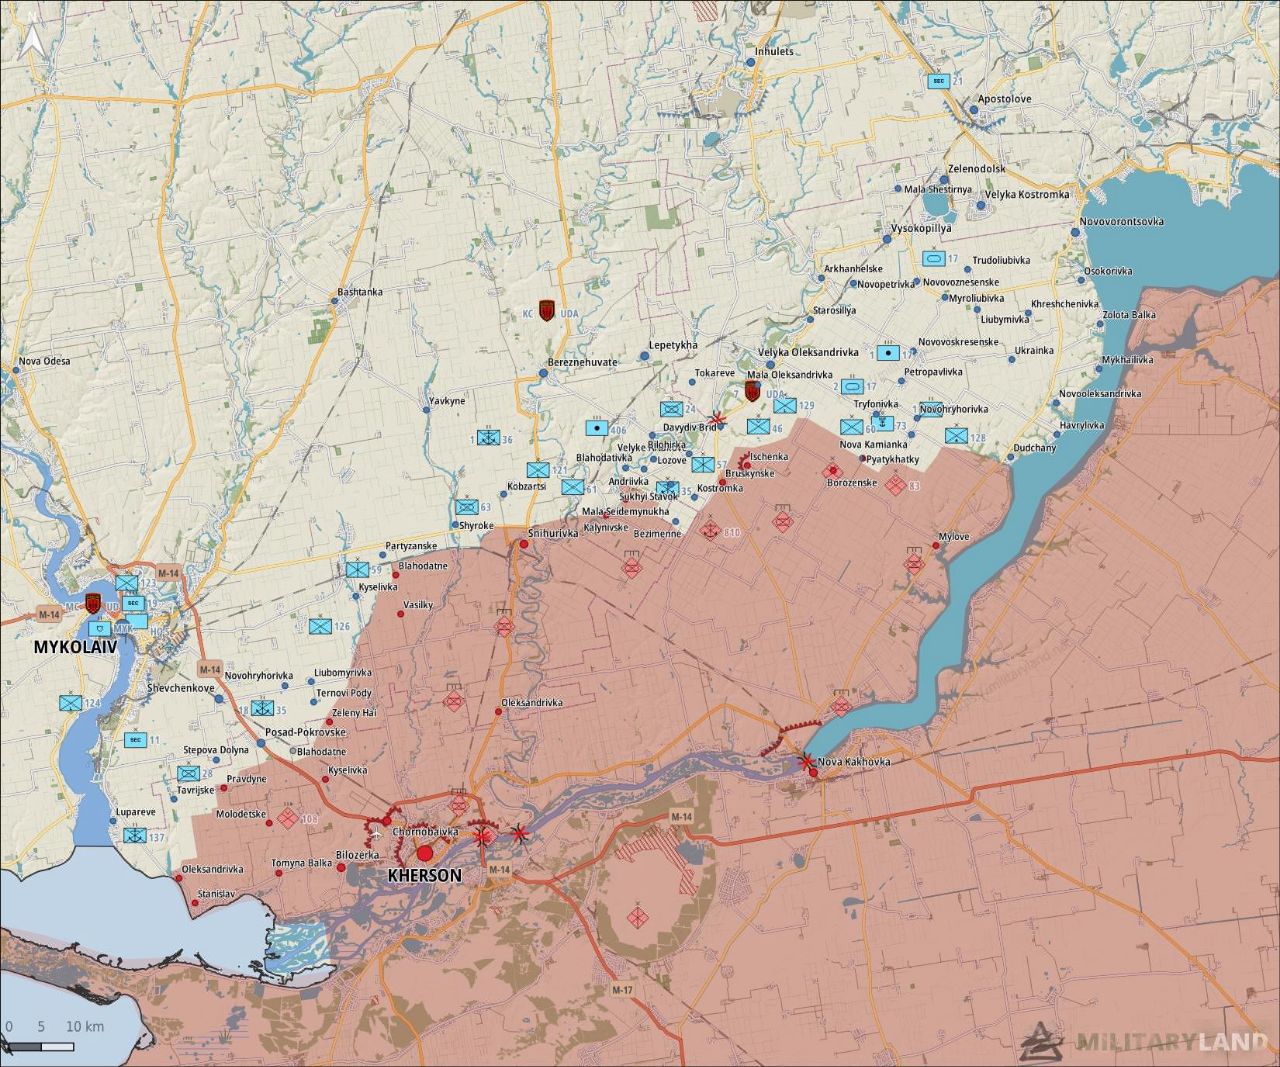 Лбс на украине что это. Херсон на карте. Линия обороны Херсонской области. Днепр на карте Херсонской области. Правый берег Днепра на карте Херсонской области.